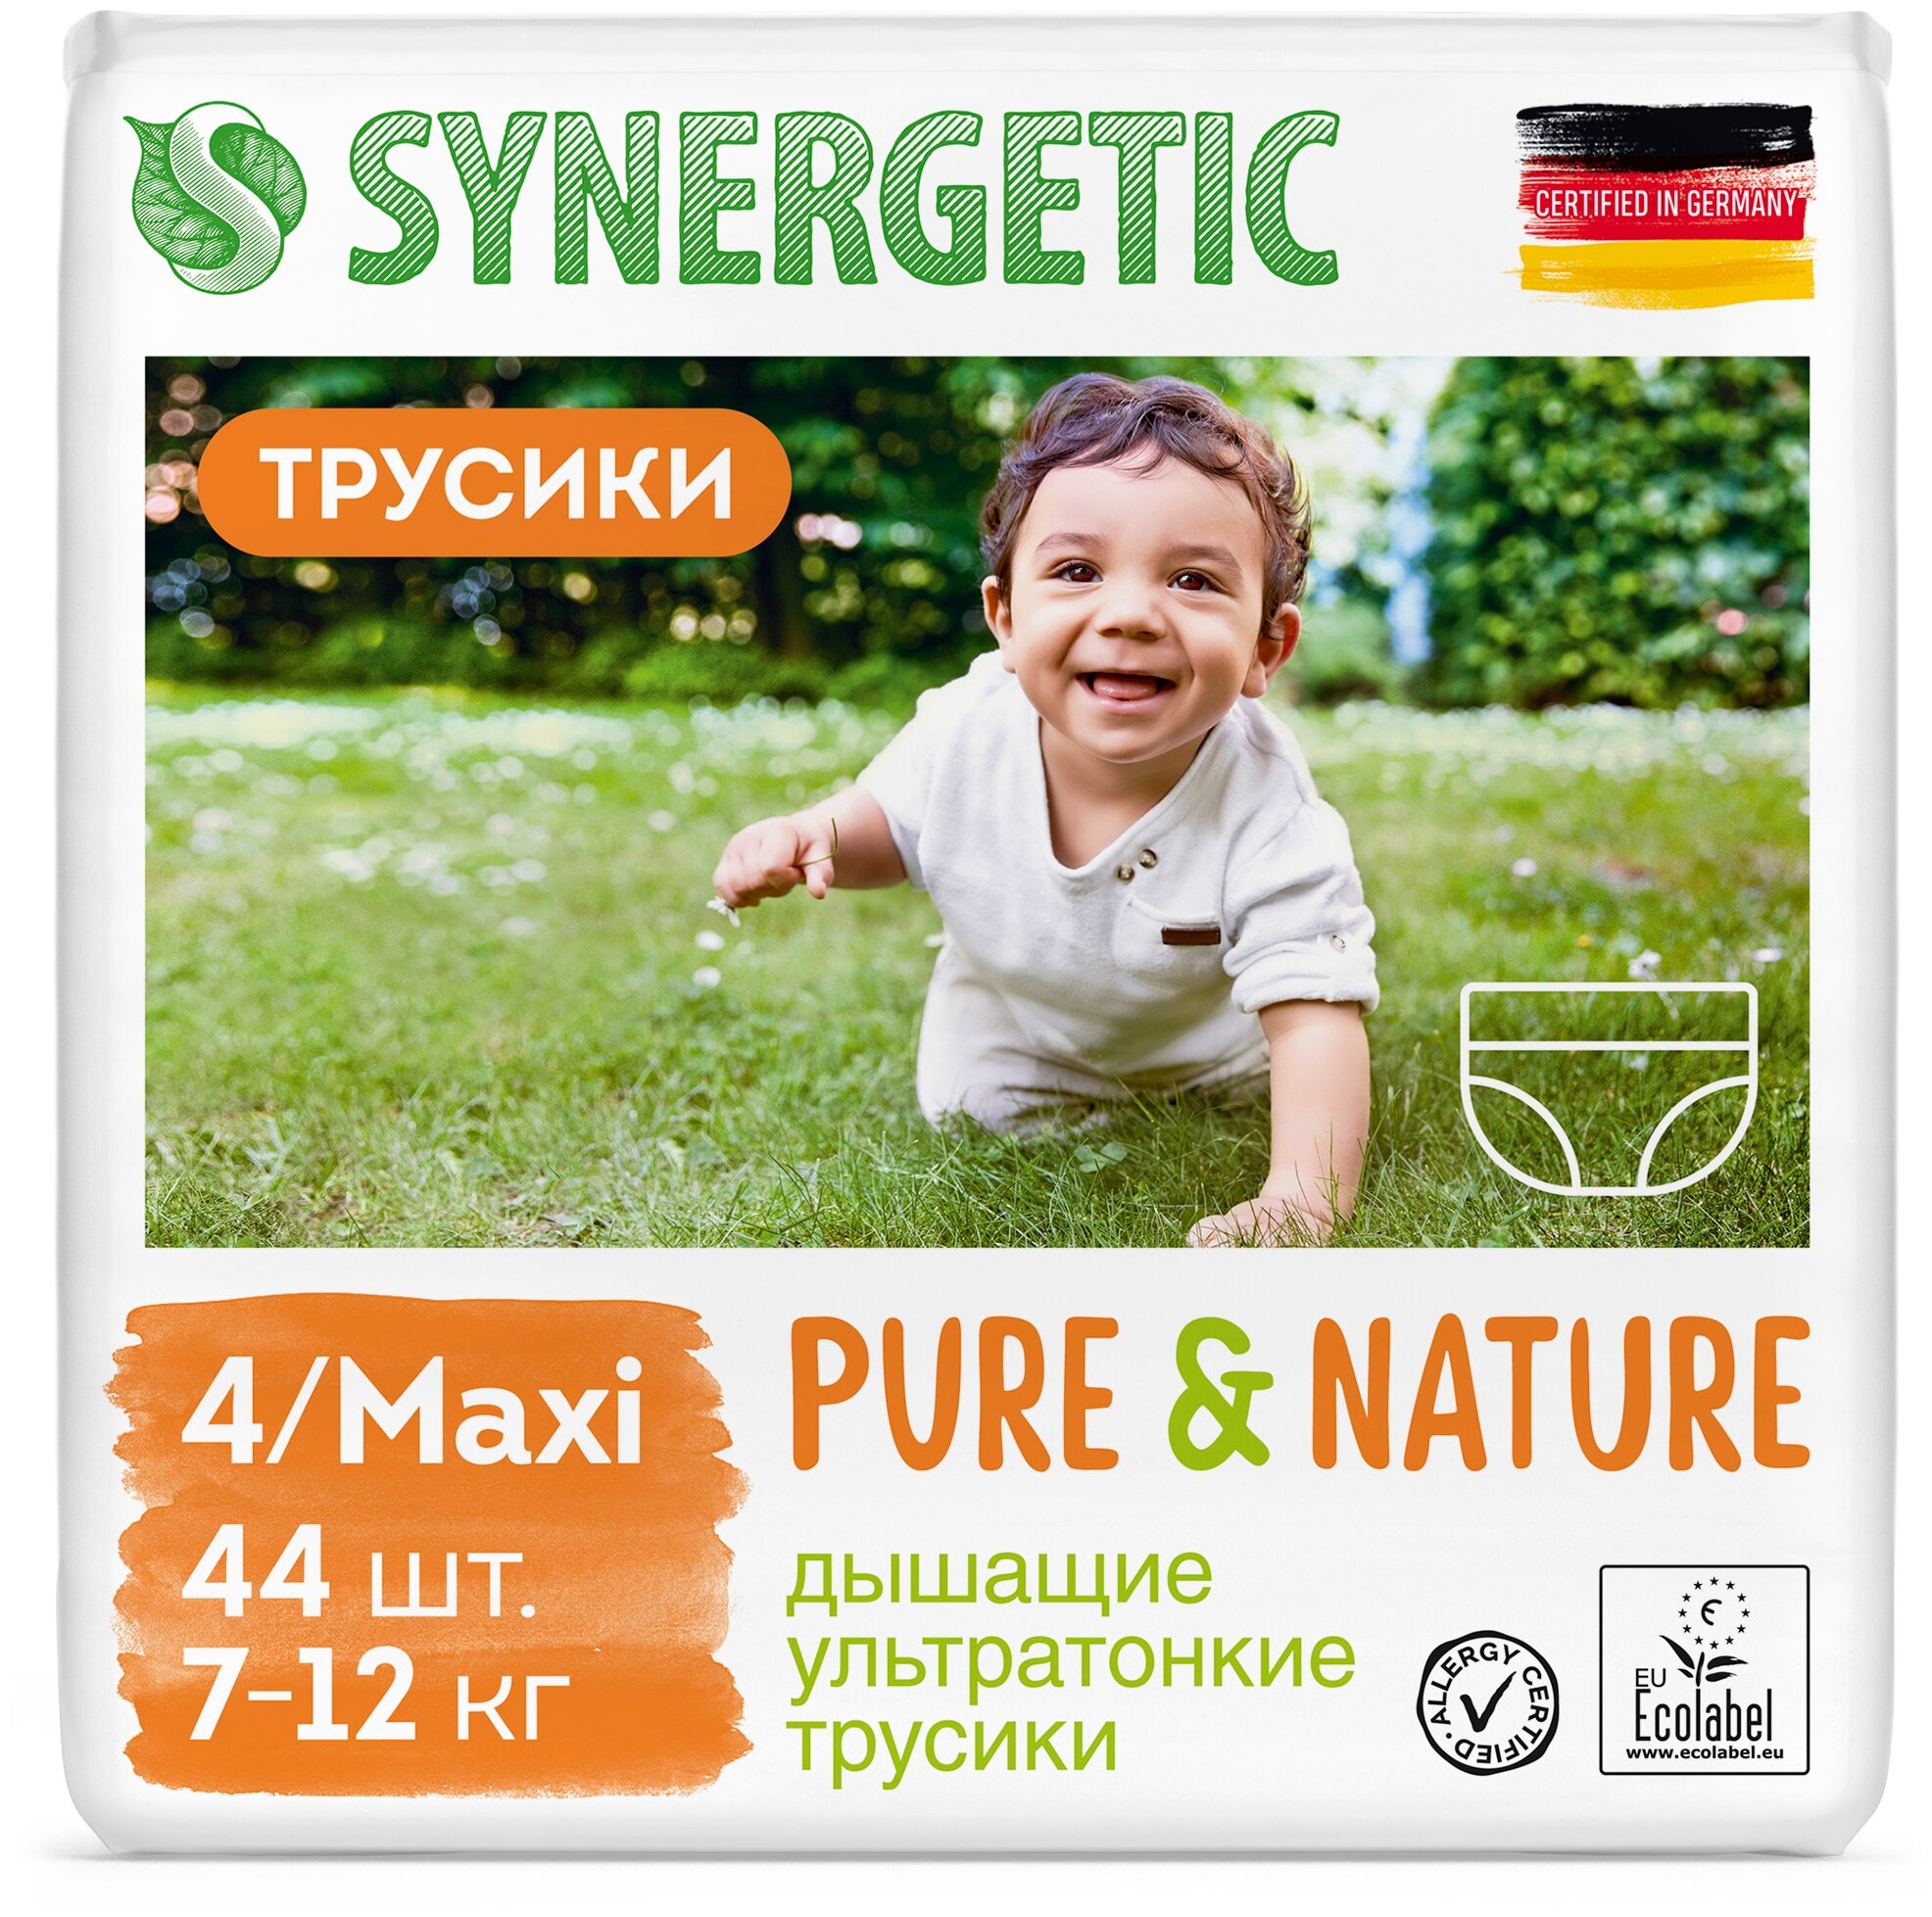 Дышащие ультратонкие детские подгузники-трусики SYNERGETIC Pure&Nature, 4 / MAXI (7-12 кг), 44шт.